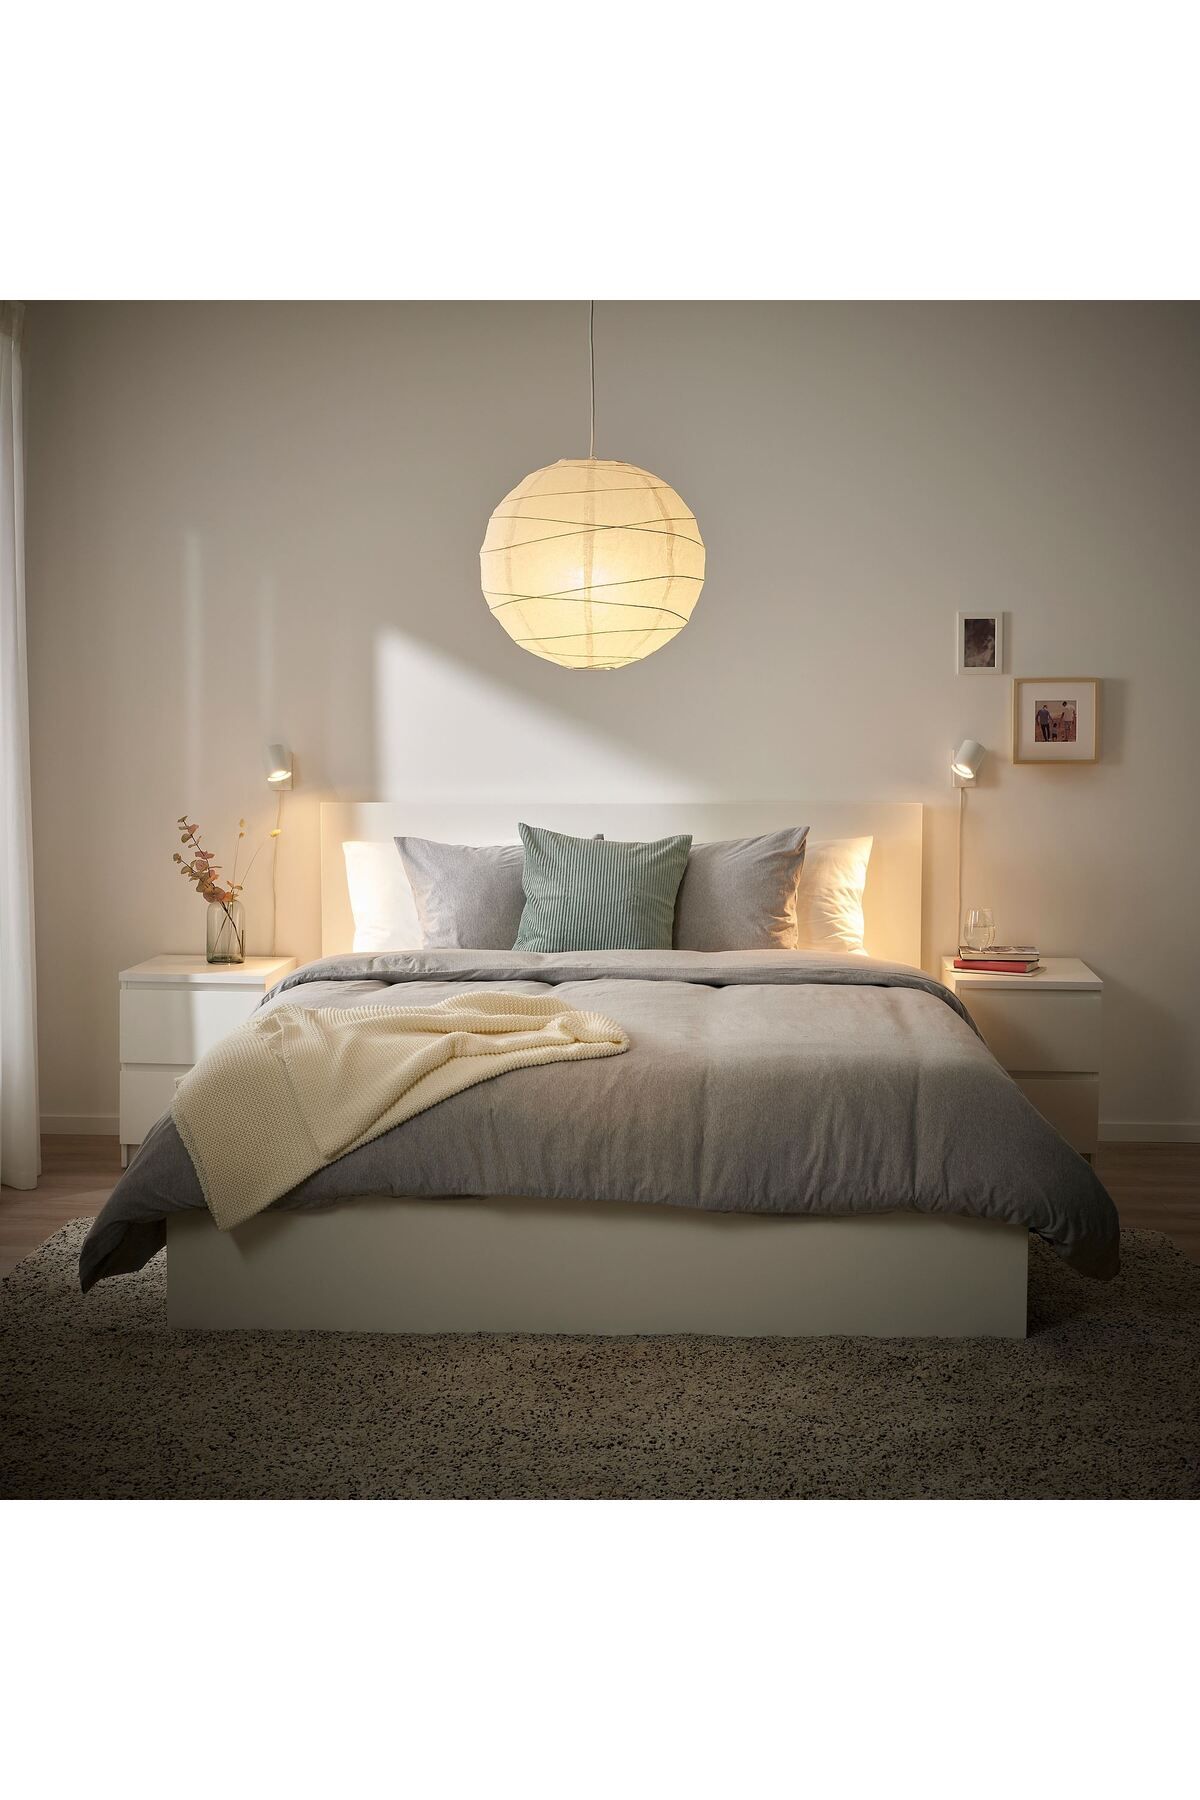 IKEA sarkıt lamba, beyaz, 45 cm kağıt lamba ile evinizde yumuşak ve rahat bir atmosfer sağlar